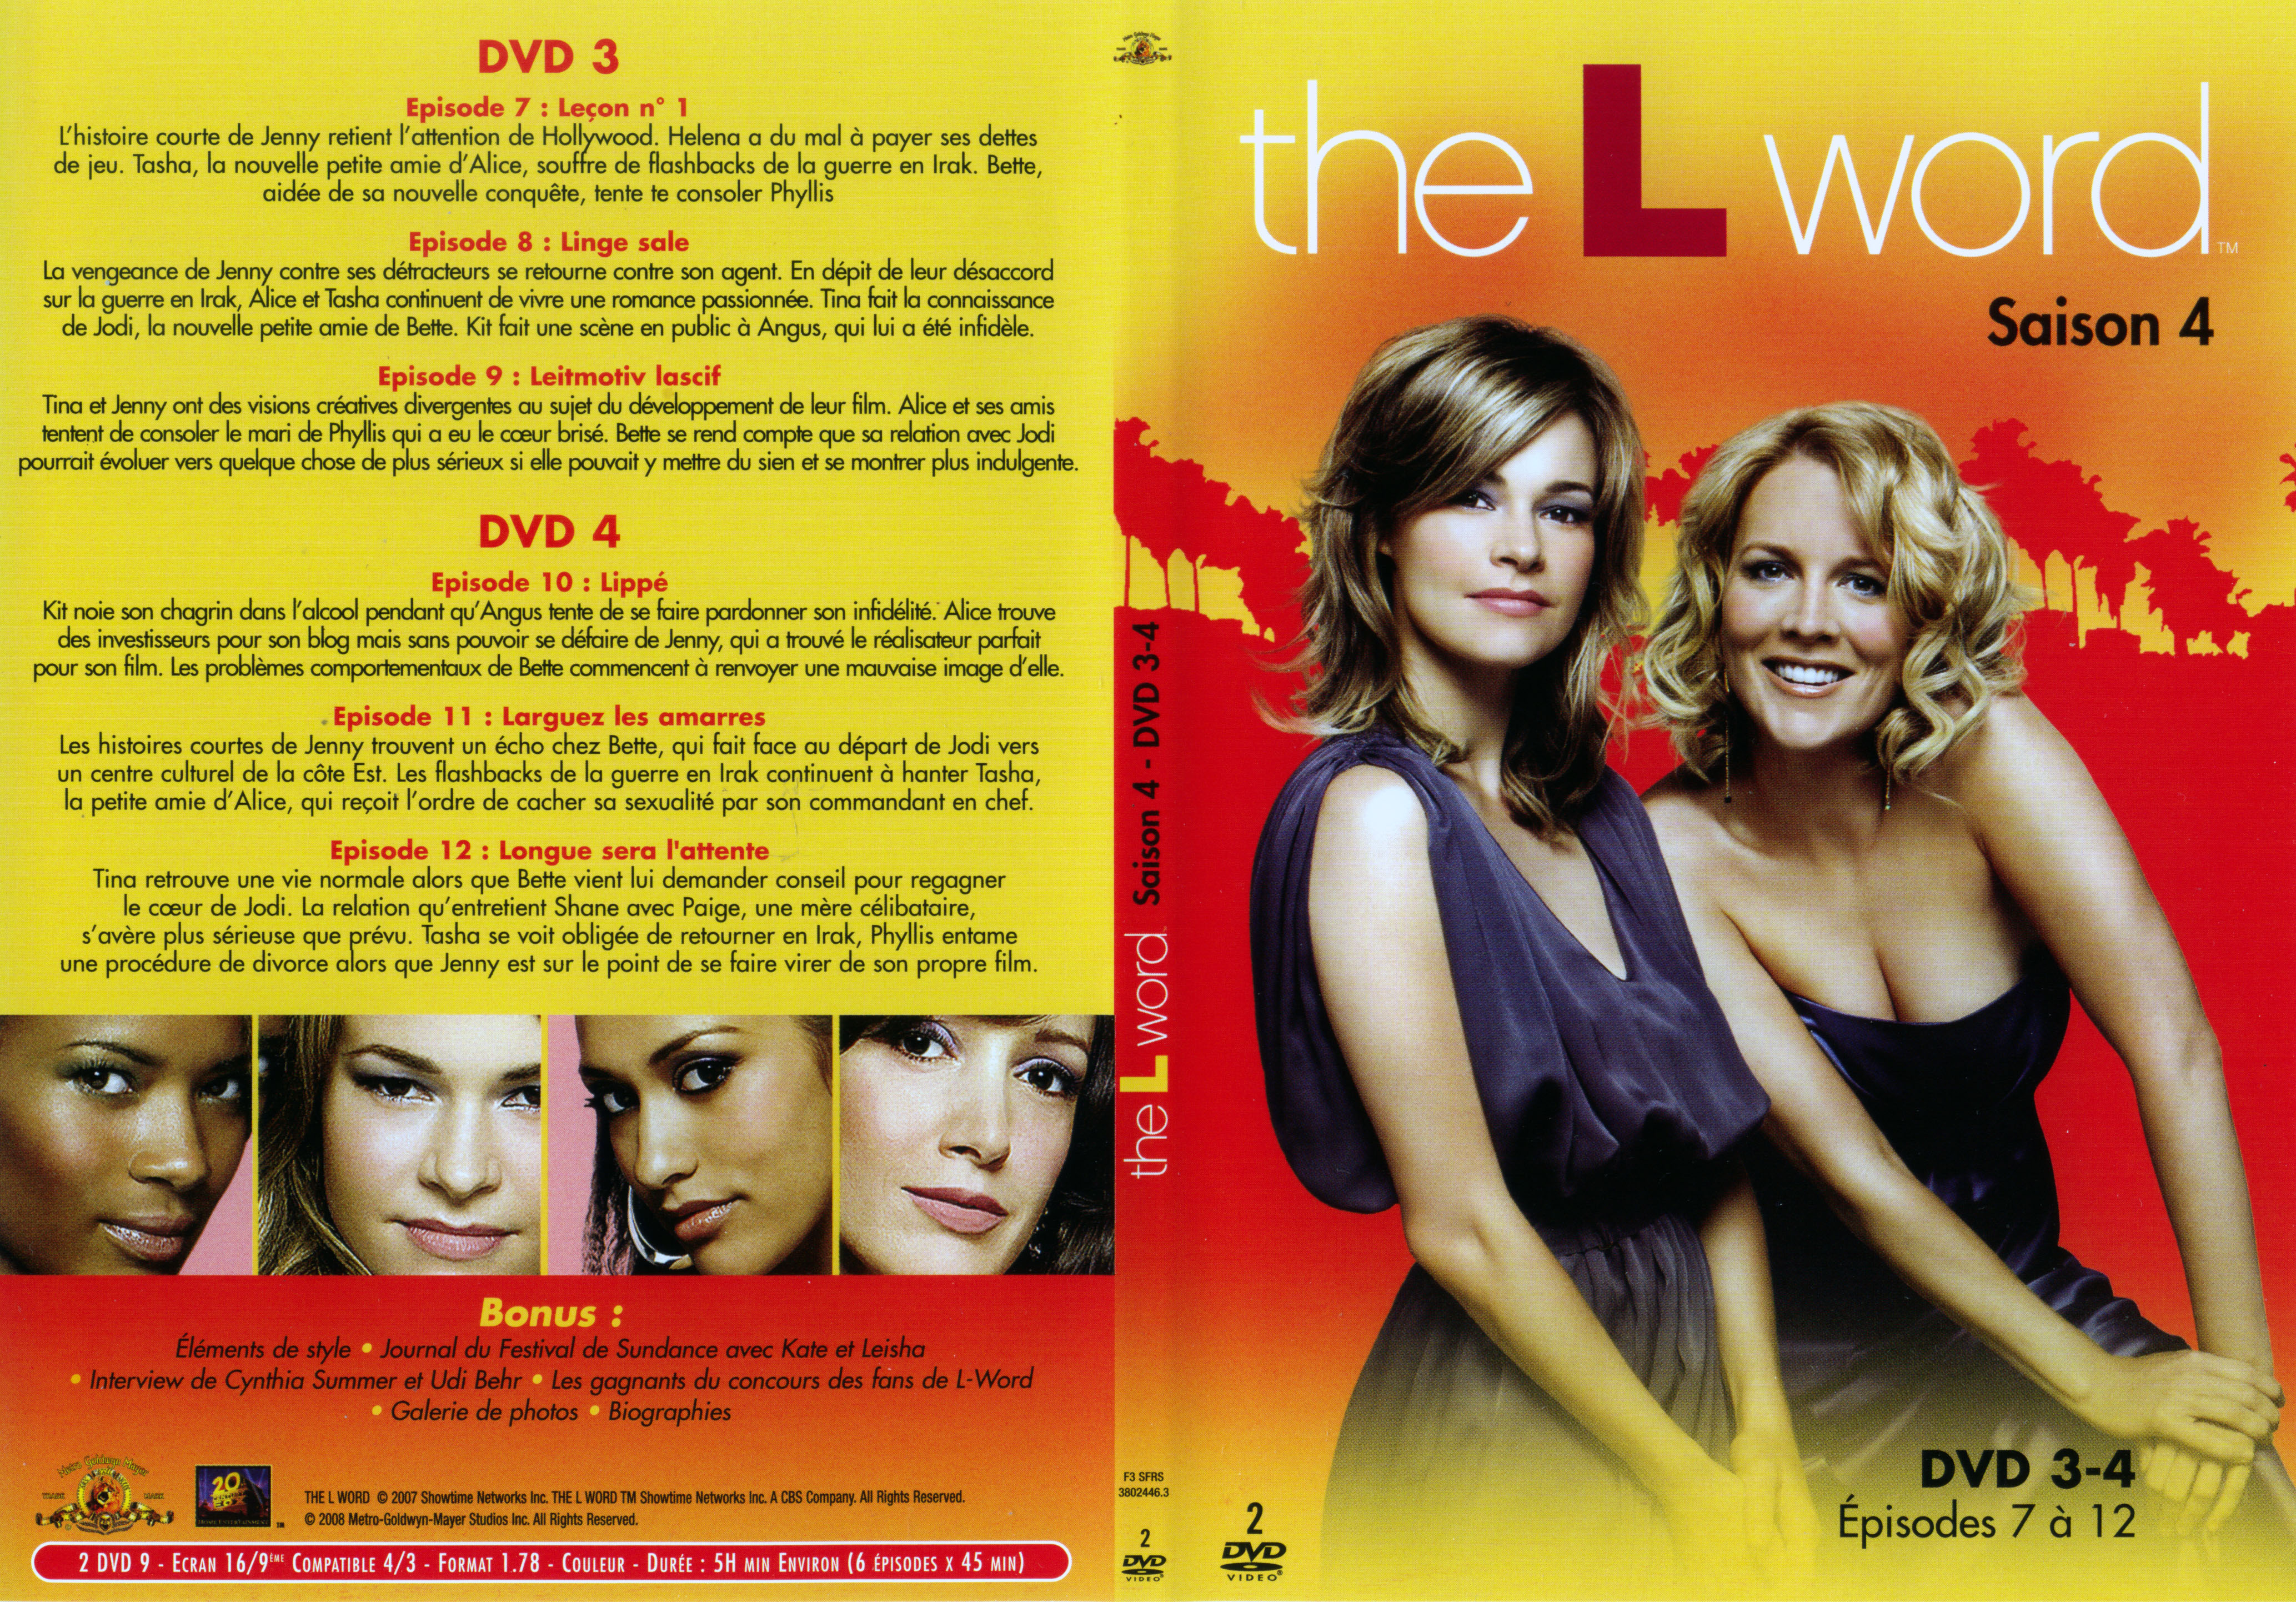 Jaquette DVD The L word Saison 4 DVD 3 et 4 (dpi 400)